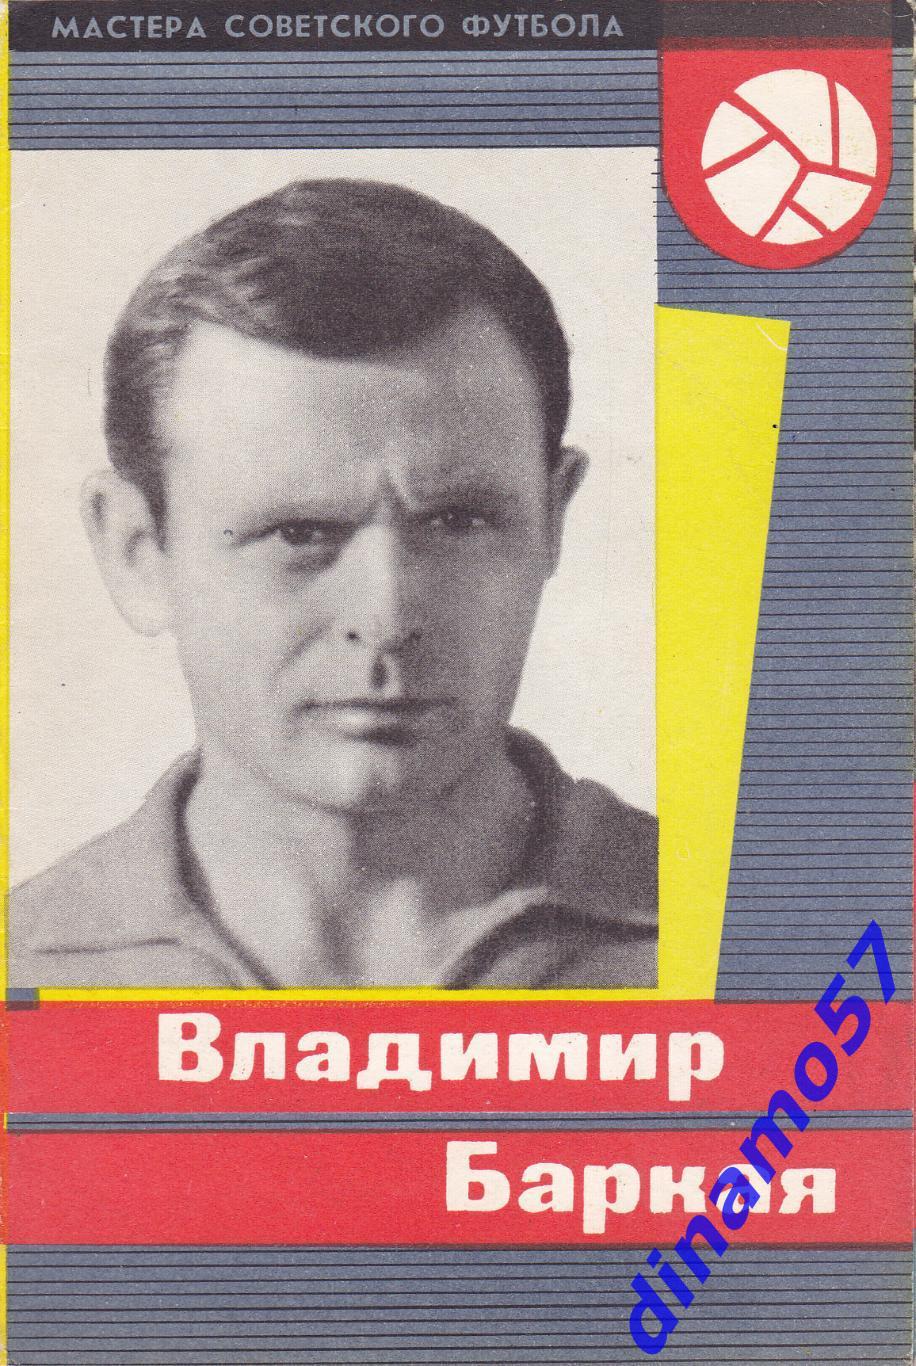 Владимир Баркая - Динамо Тбилиси 1965 г серия - Мастера Советского футбола